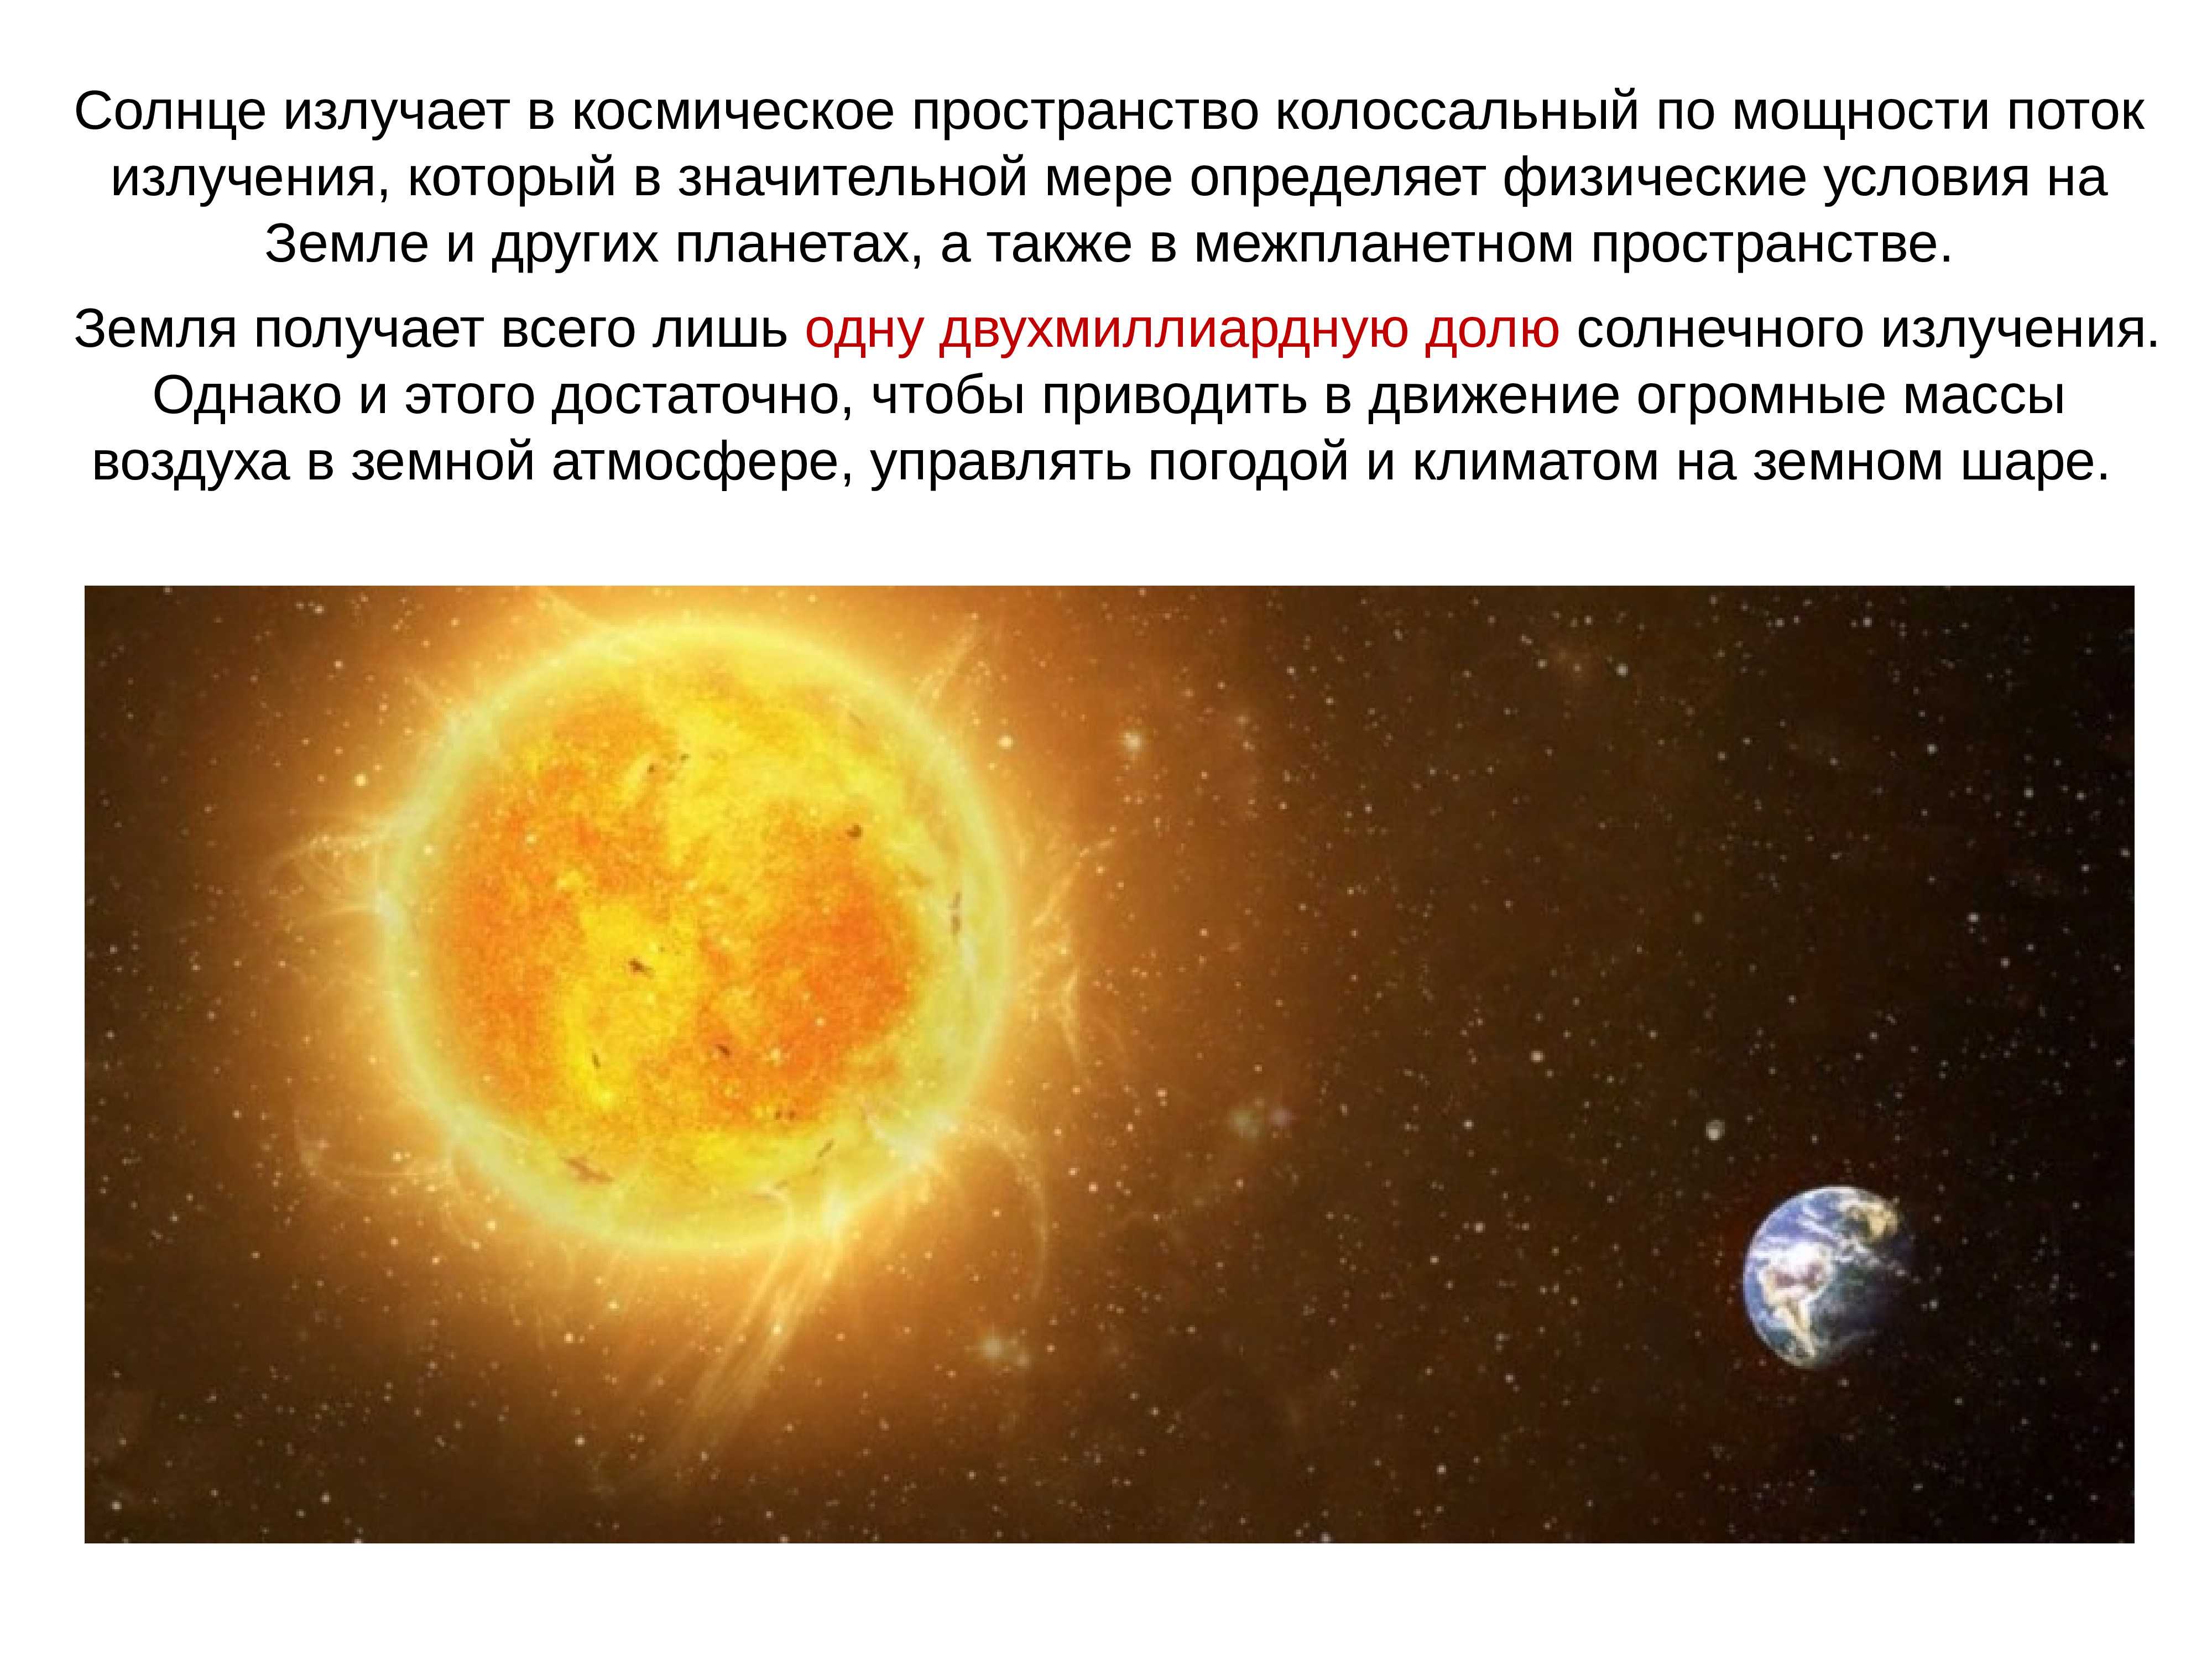 § 4. влияние космоса на землю и жизнь людей